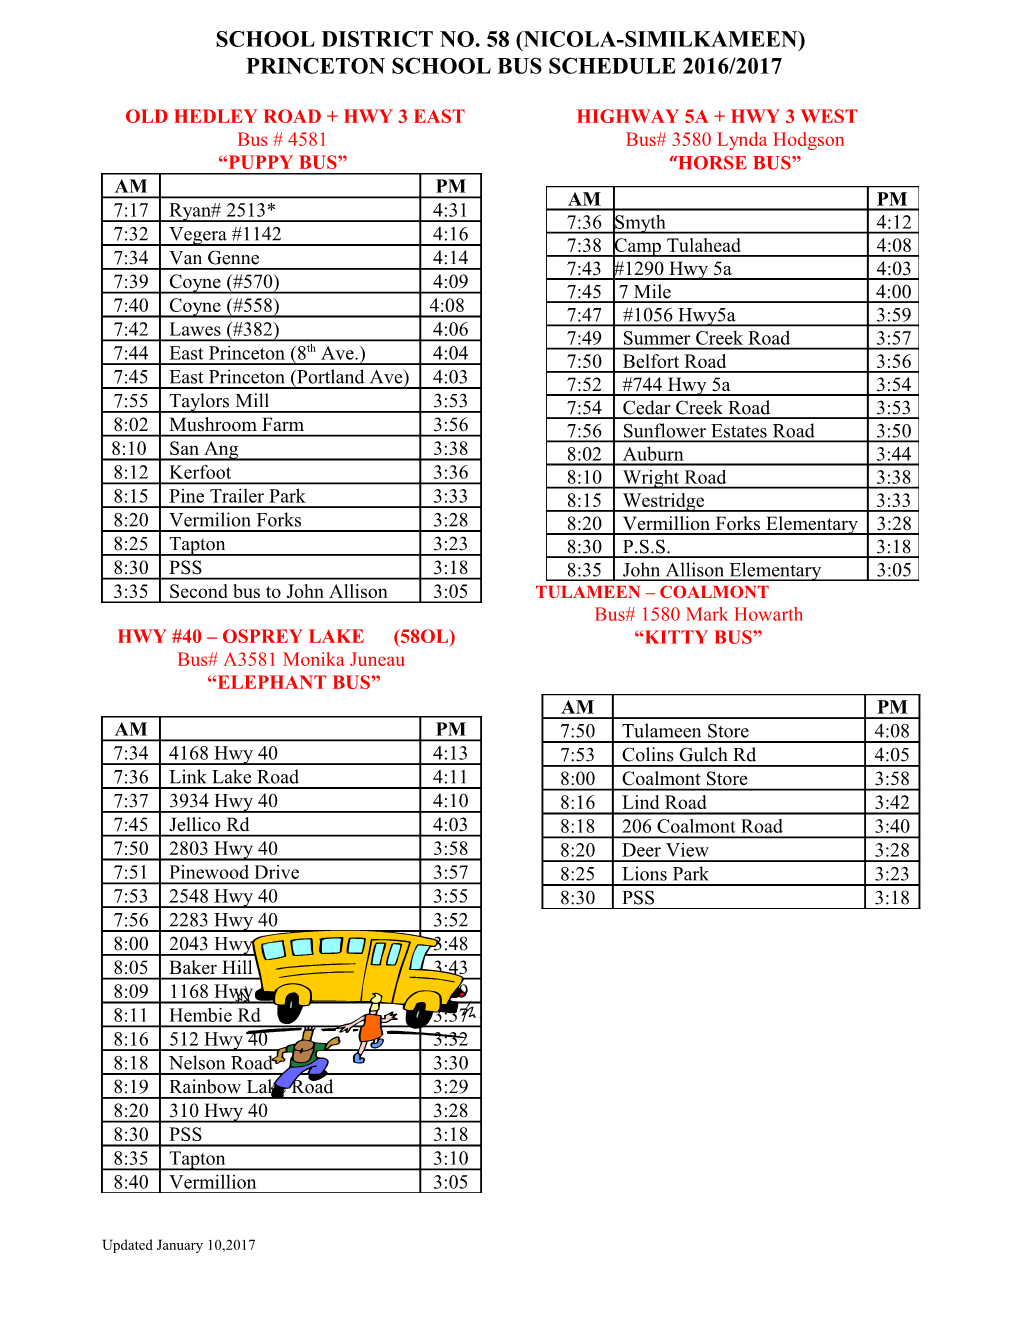 School Bus Schedule Merritt 2004 - 2005